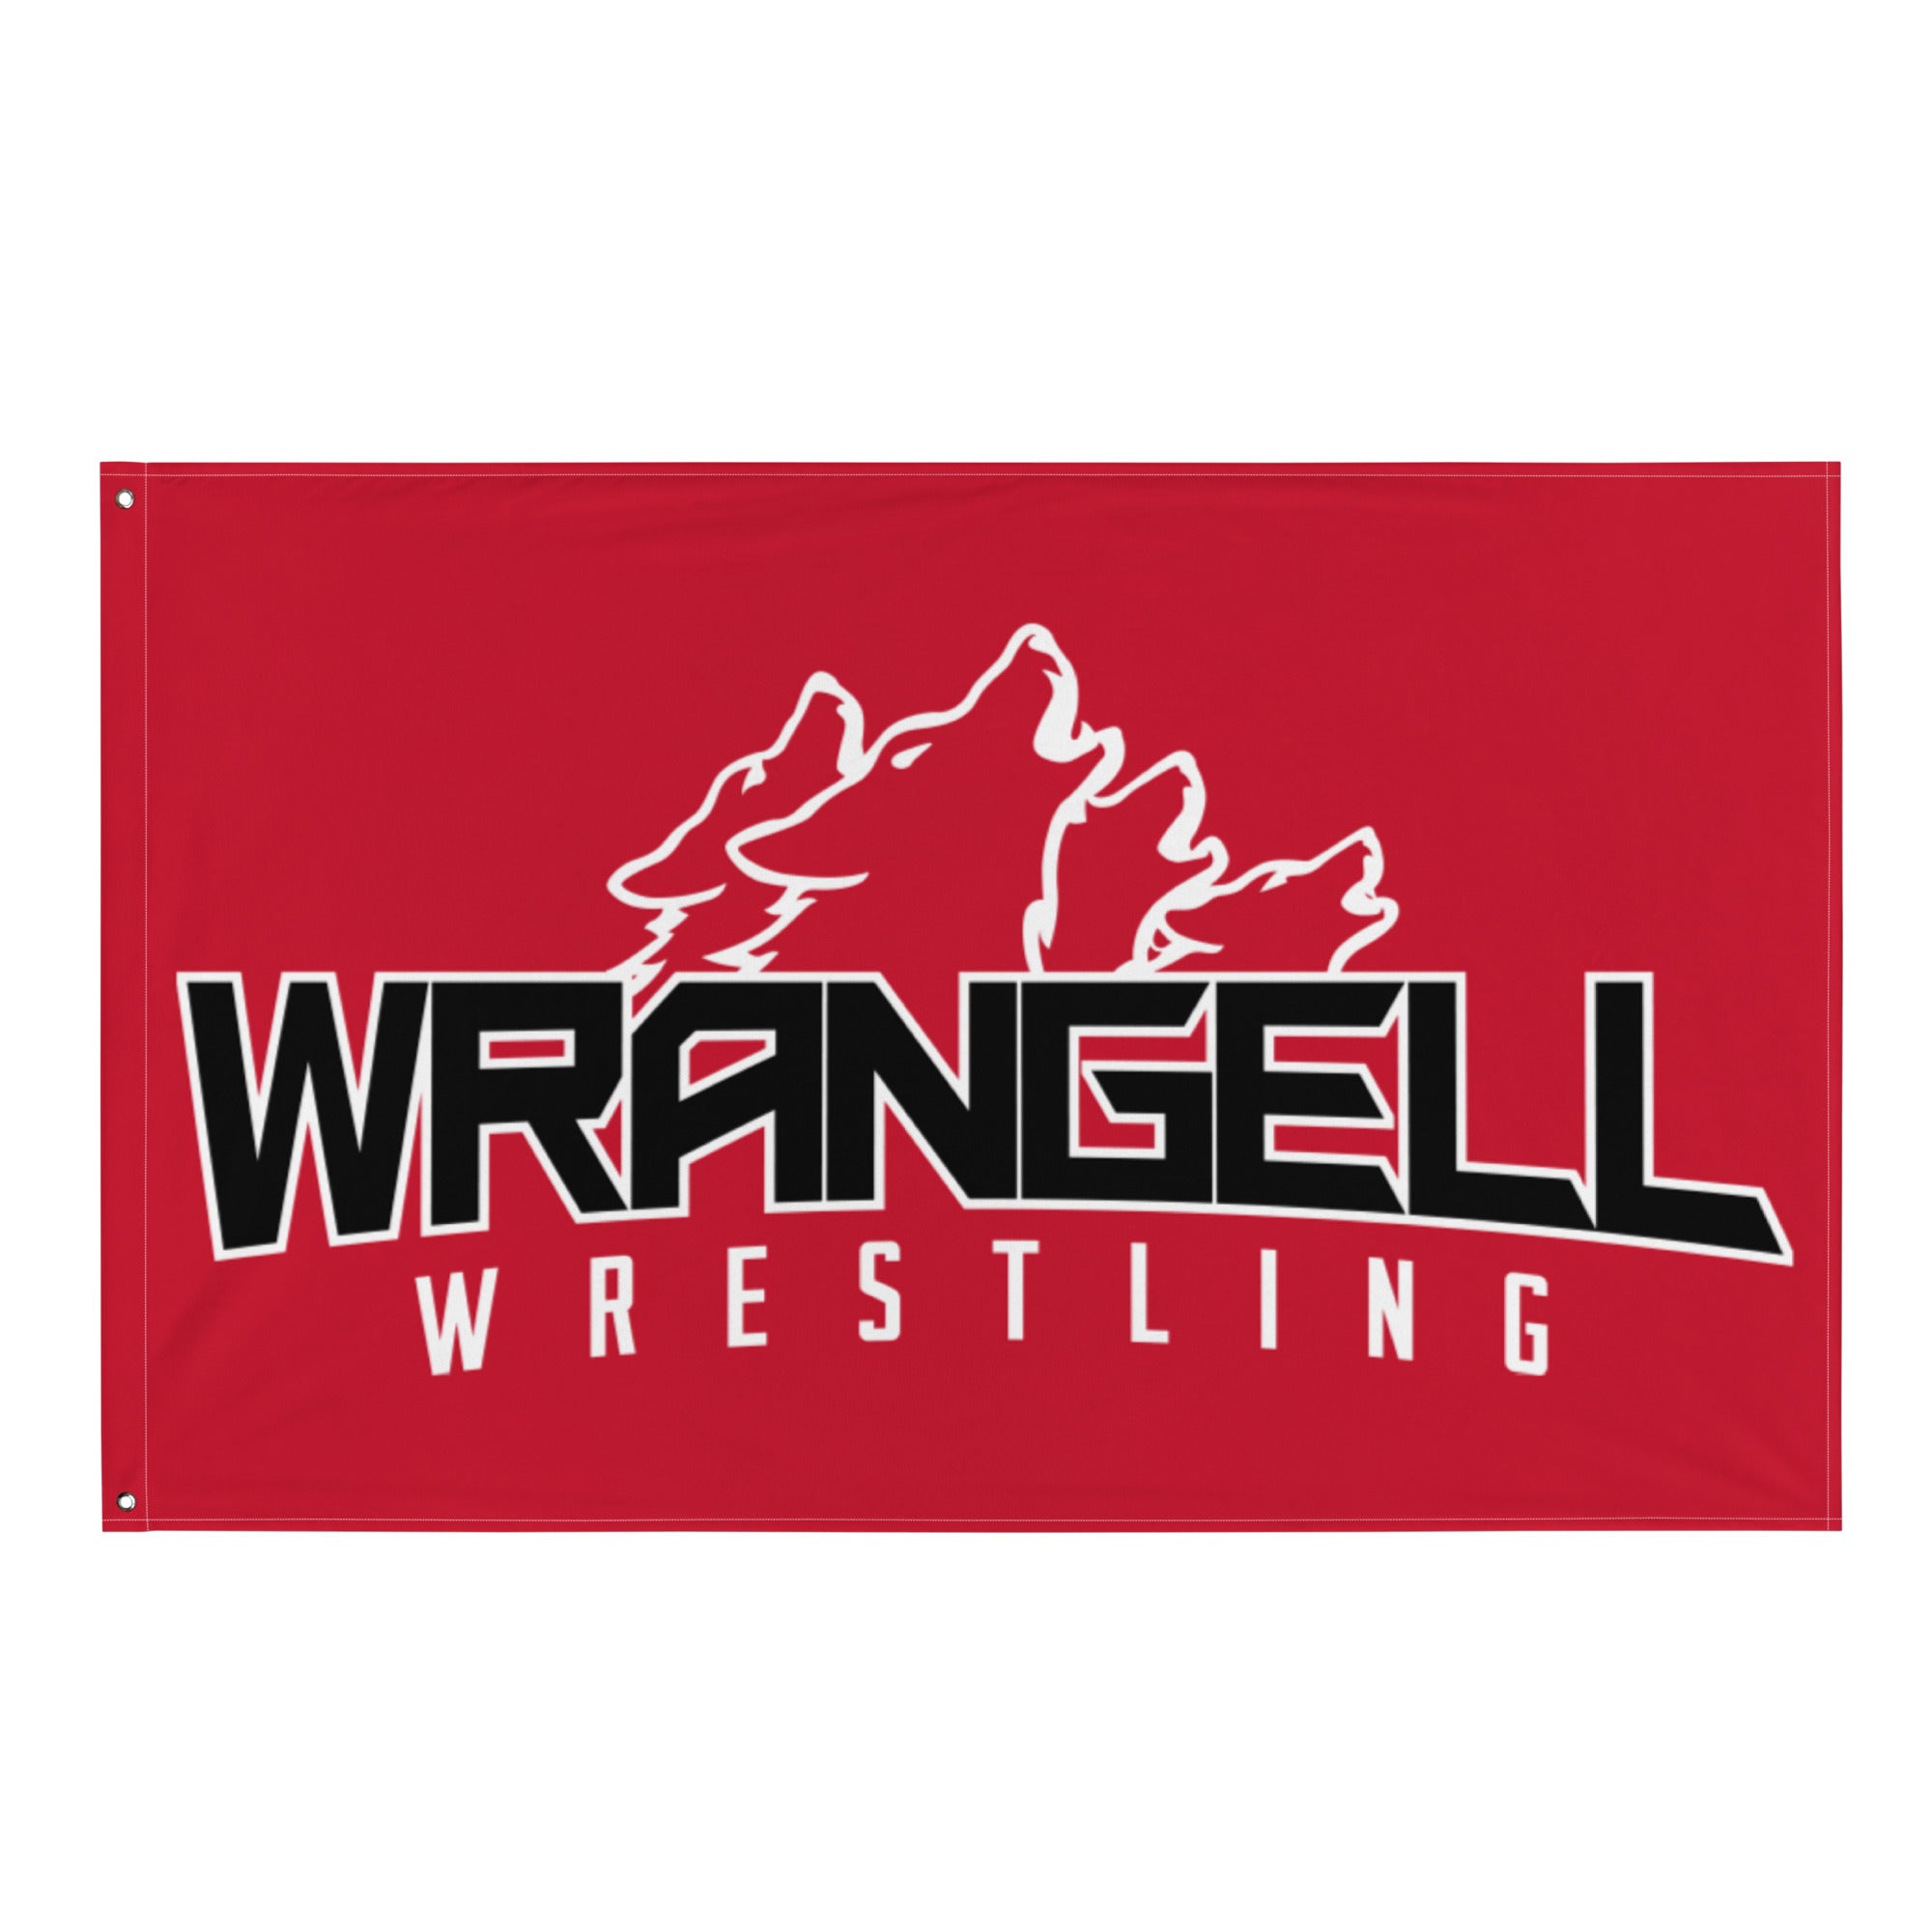 Wrangell Wrestling All-Over Print Flag v2